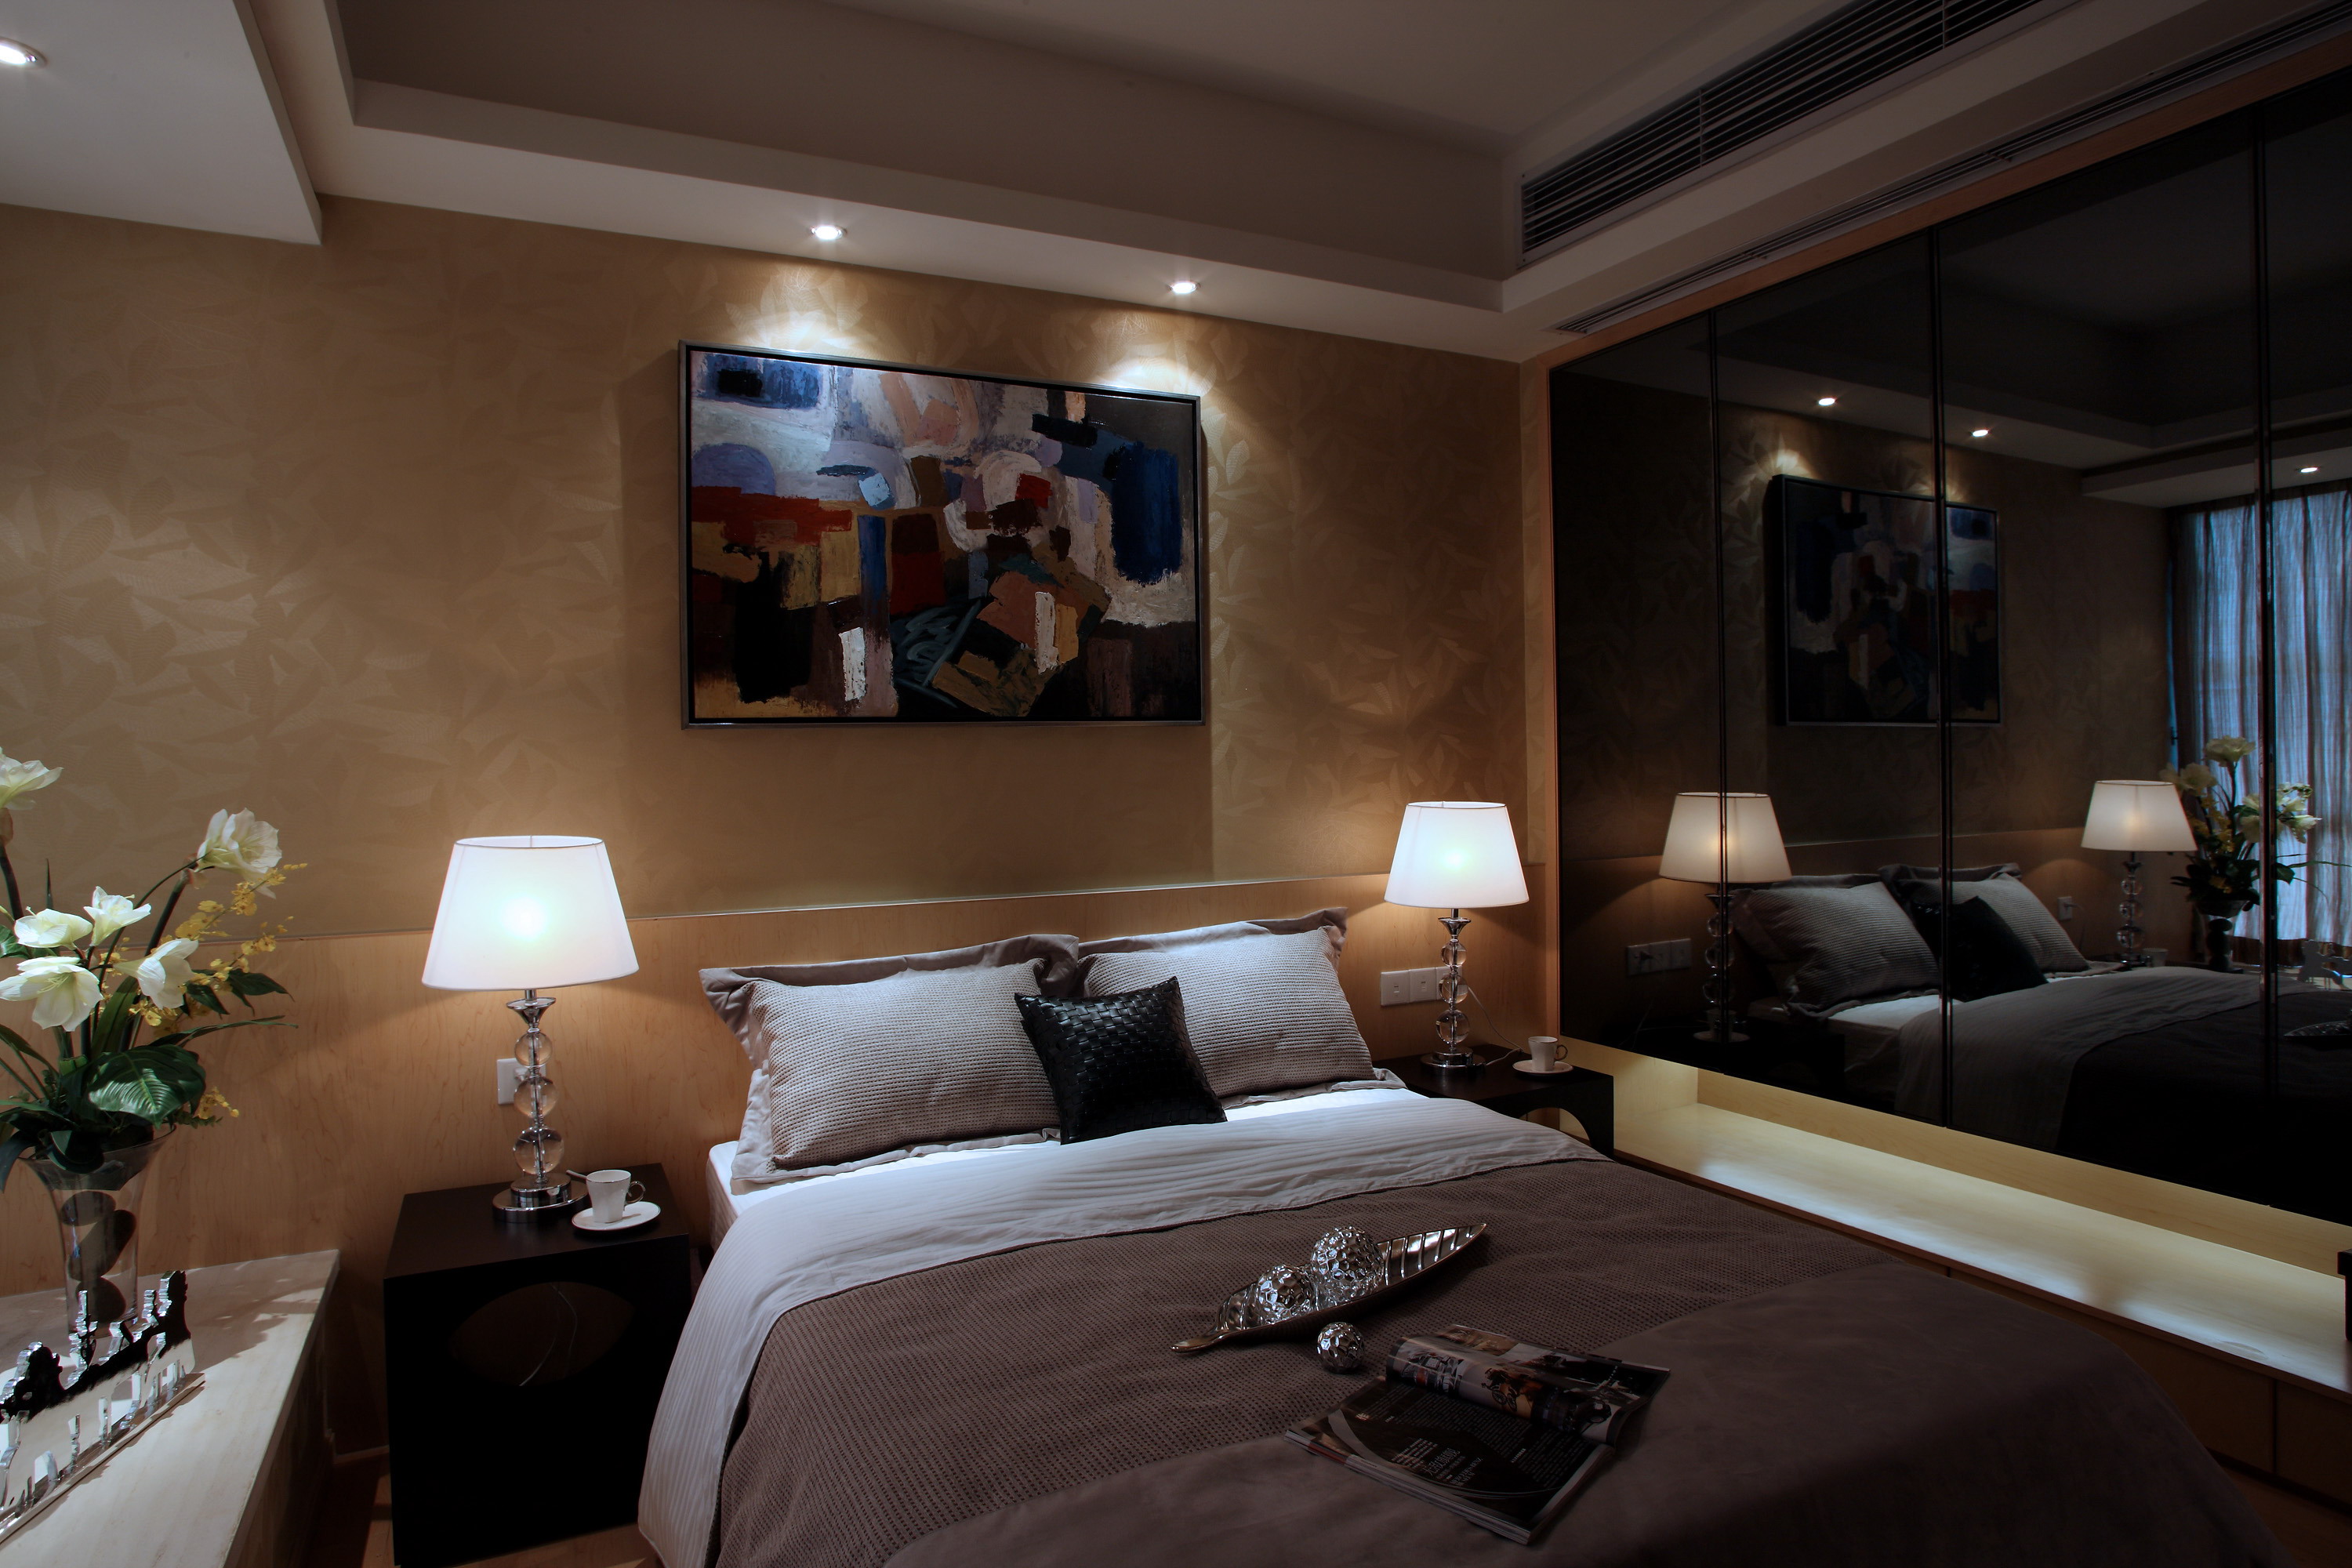 简约 港式 现代时尚 温馨 舒适 大气 卧室图片来自成都生活家装饰在现代港式风格展现的分享